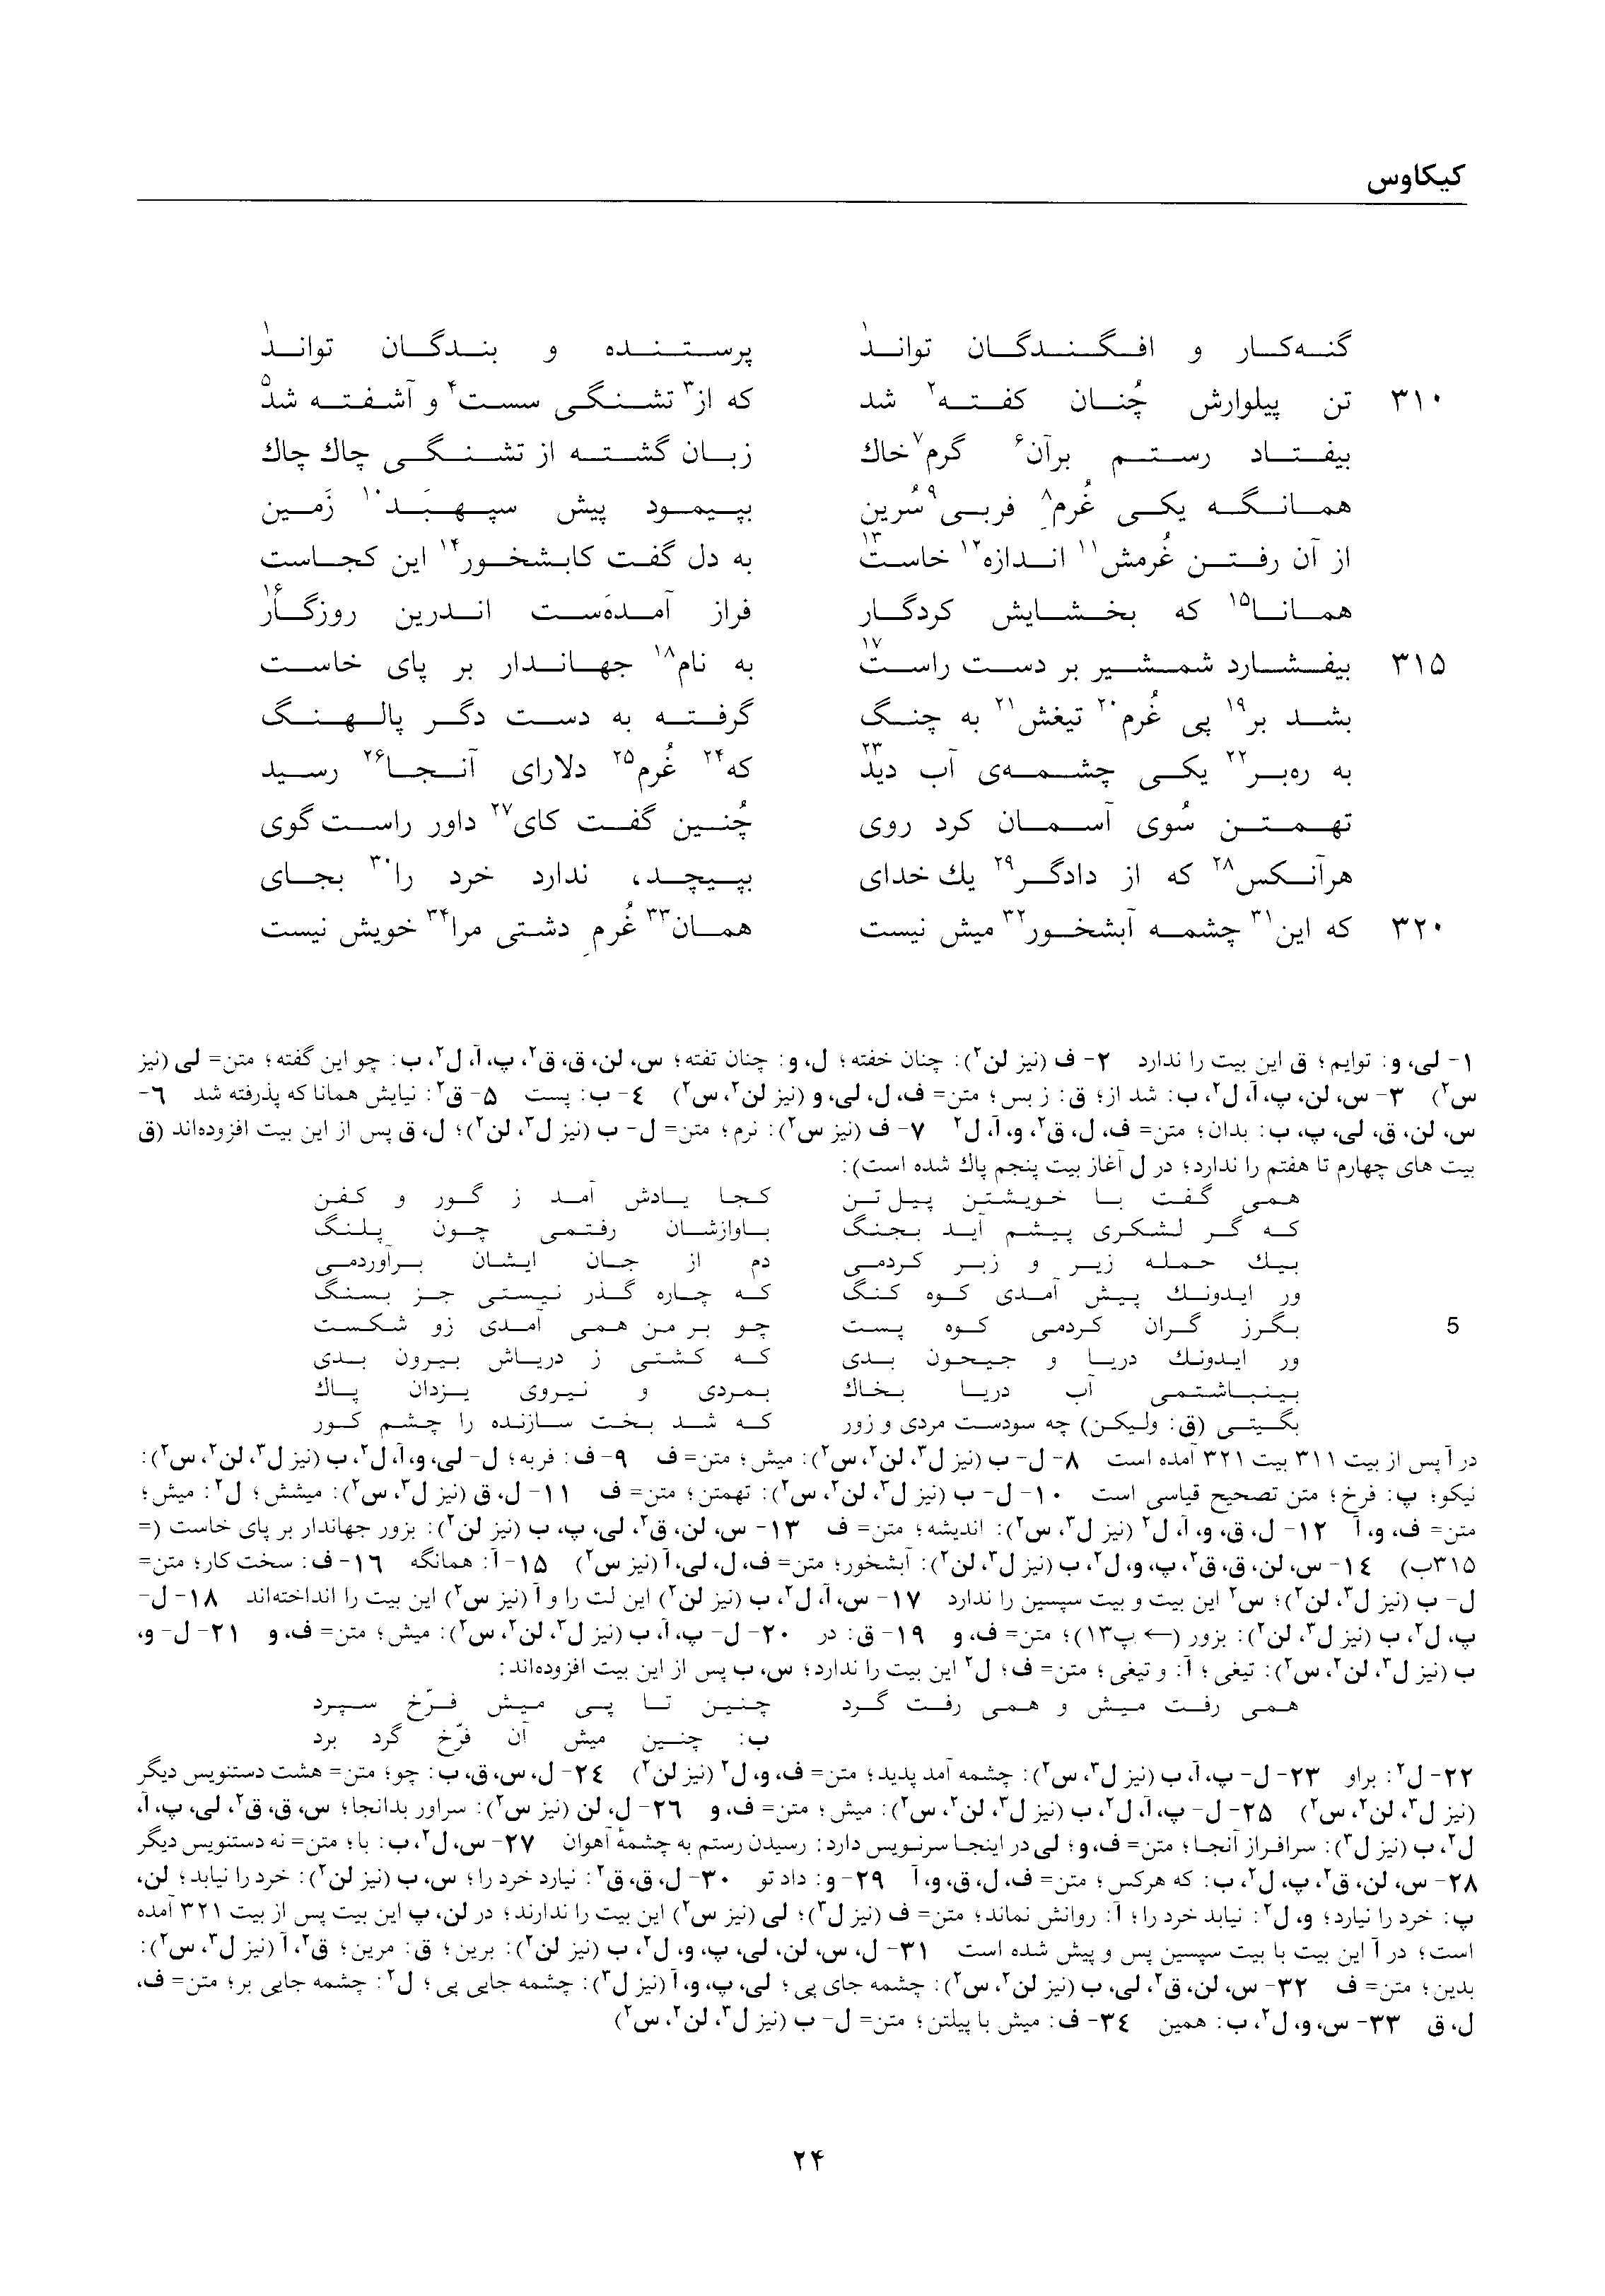 vol. 2, p. 24